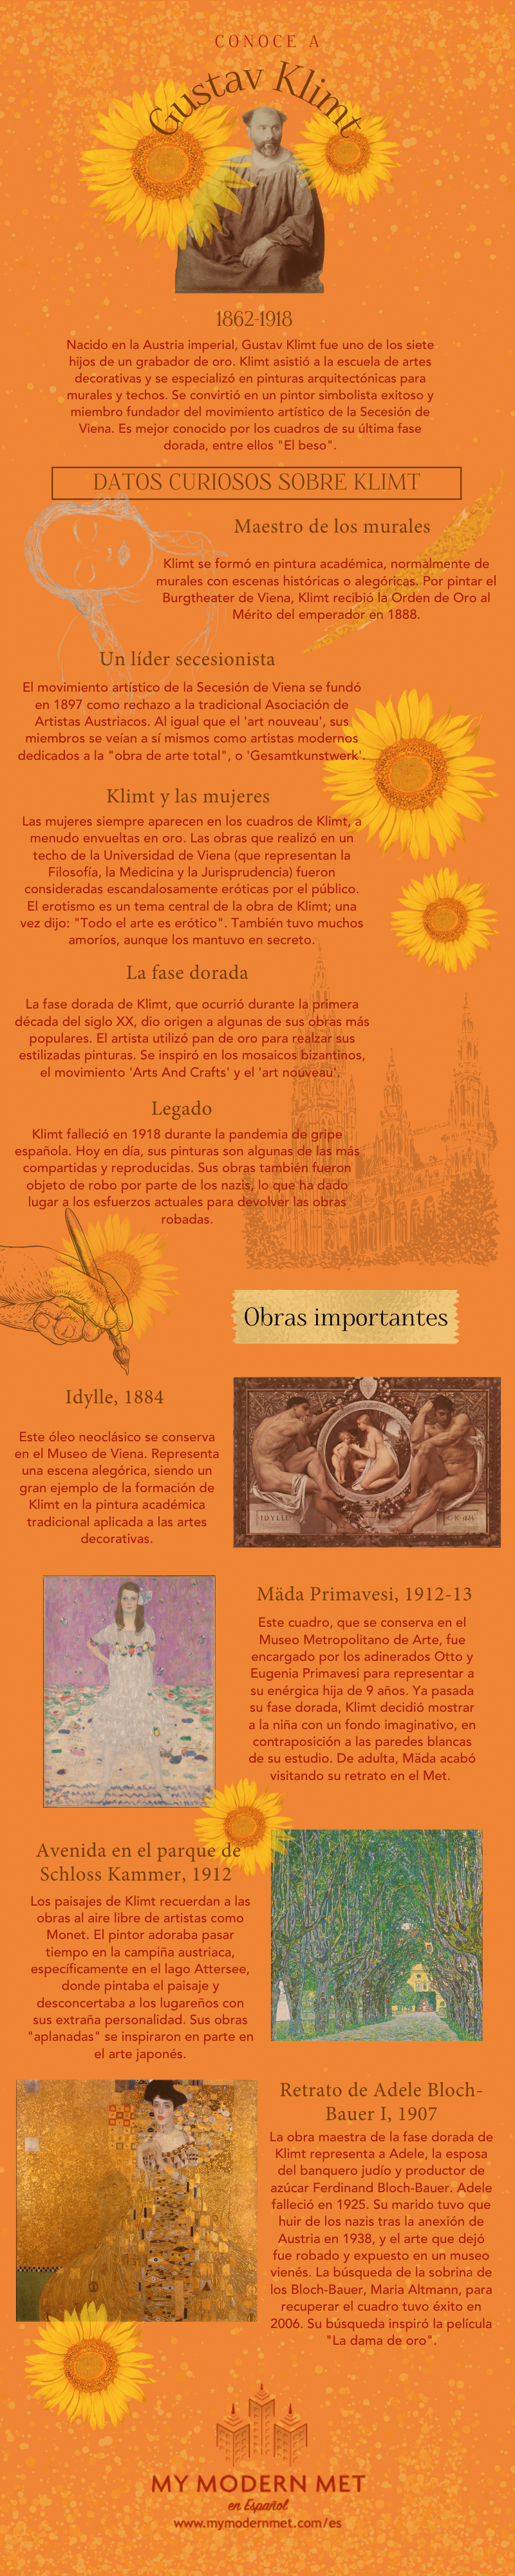 Infografía de Gustav Klimt